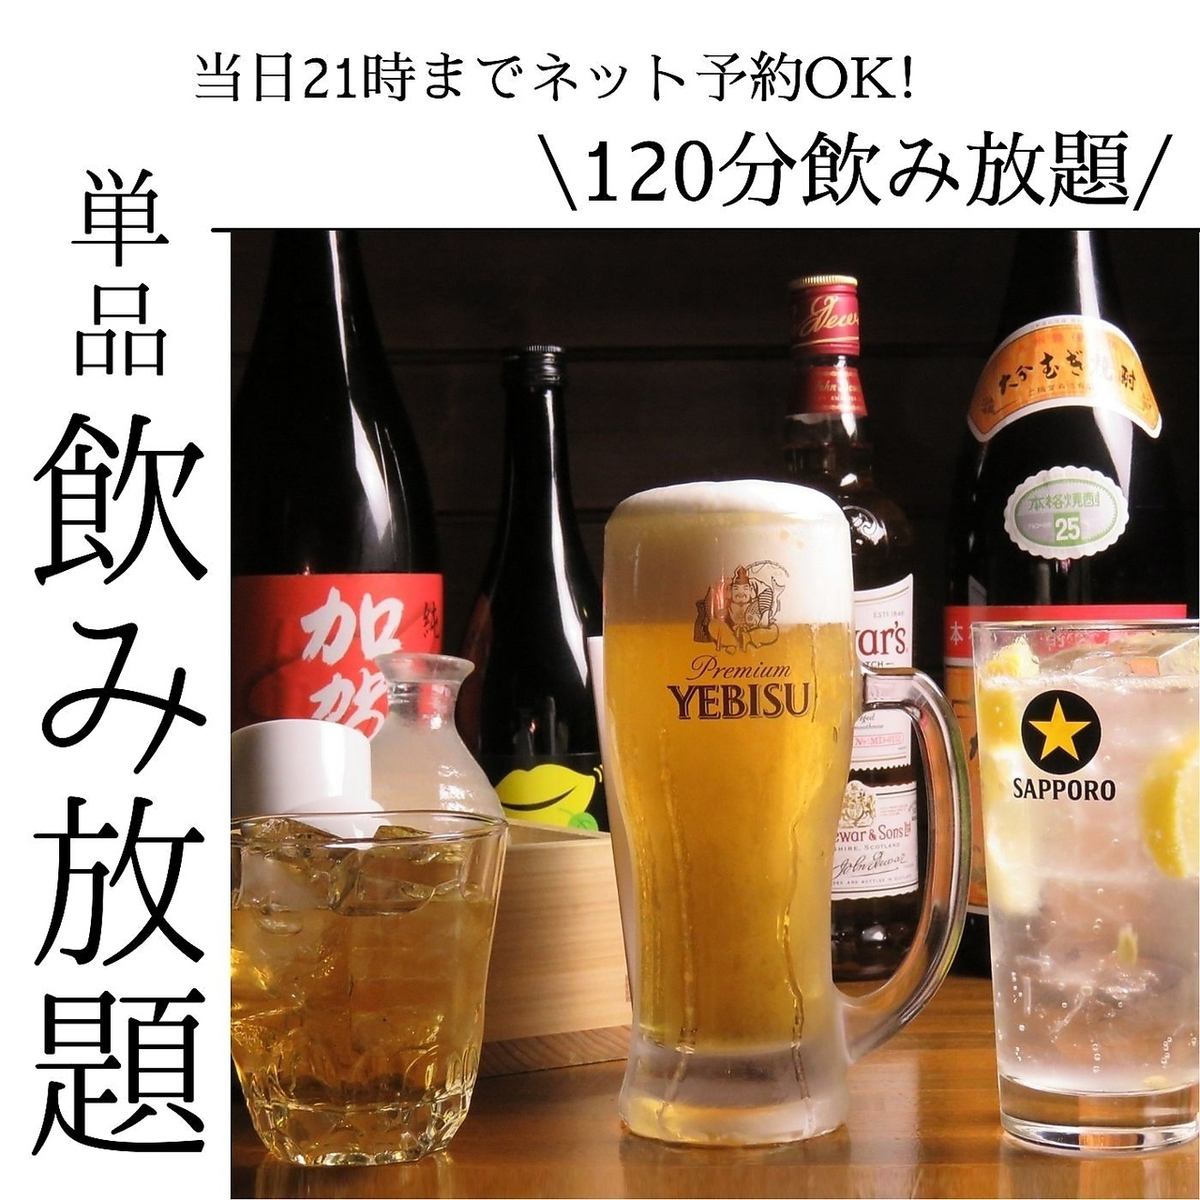 전요일 유익한 단품 음료 무제한 2,000엔(부가세 포함)